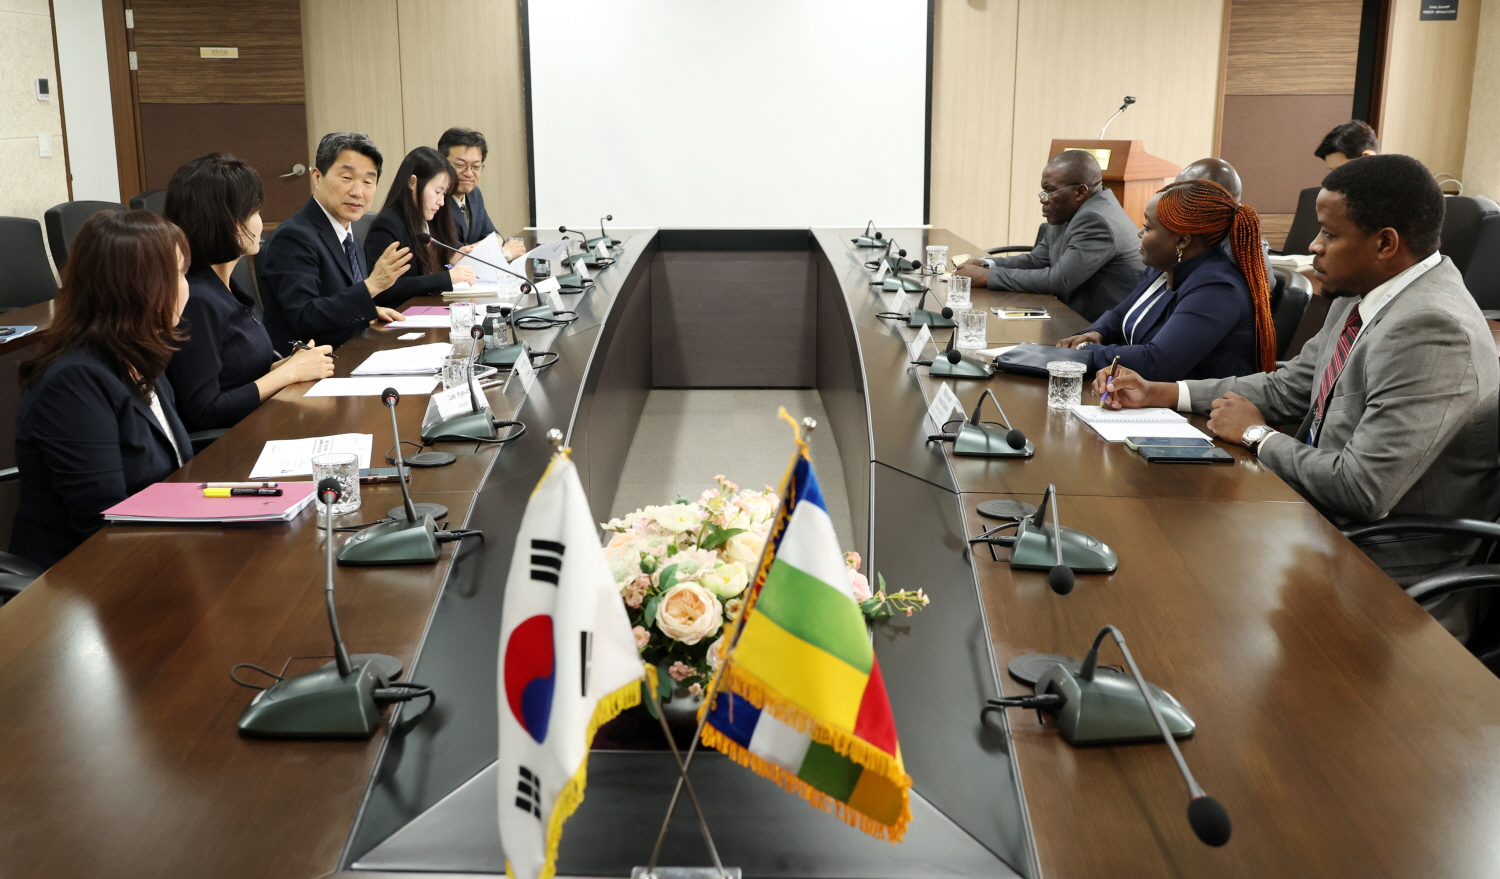 이주호 부총리 겸 교육부 장관은 6월 5일(수), 한국교육시설안전원에서 리샤르 필라코타(Richard FILAKOTA) 중앙아프리카공화국 경제기획협력부 장관과 면담했다.